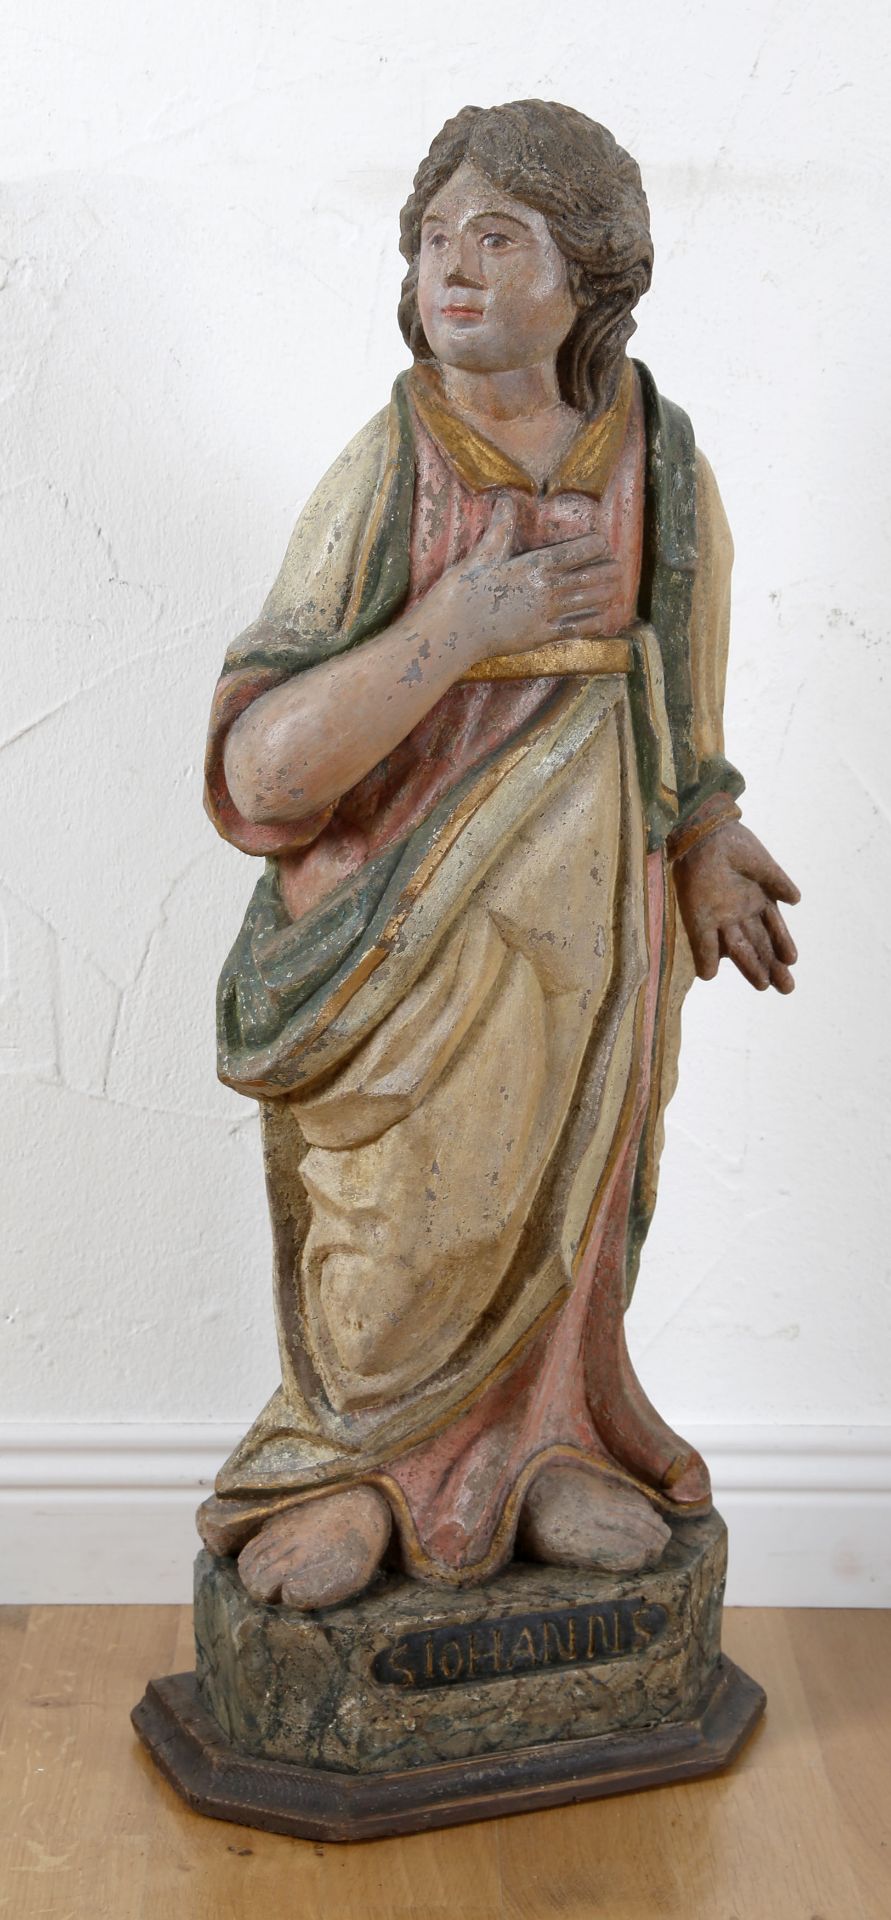 Apostel Johannes, farbig gefasste Skulptur aus grauem Sandstein, Saarland/Lothringen. 2. H. 18. Jh.